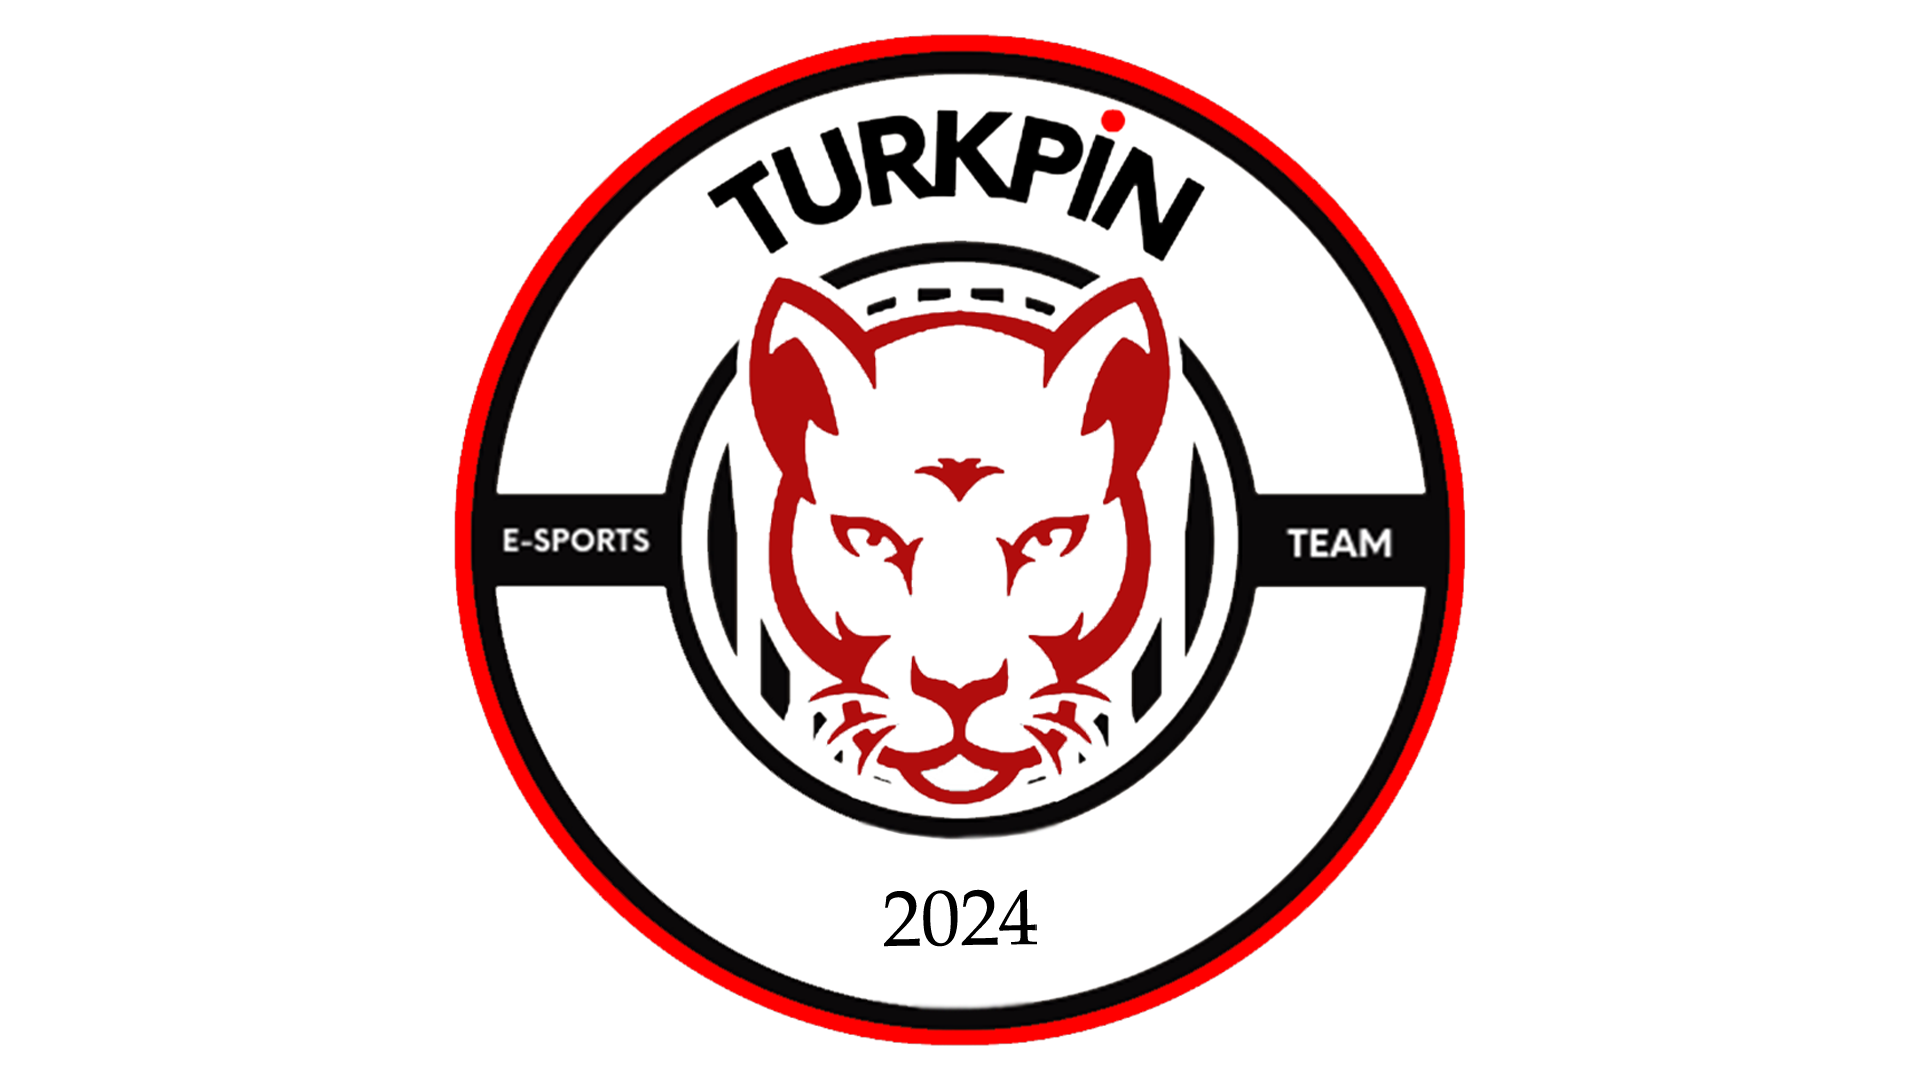 Turkpin E-Sports